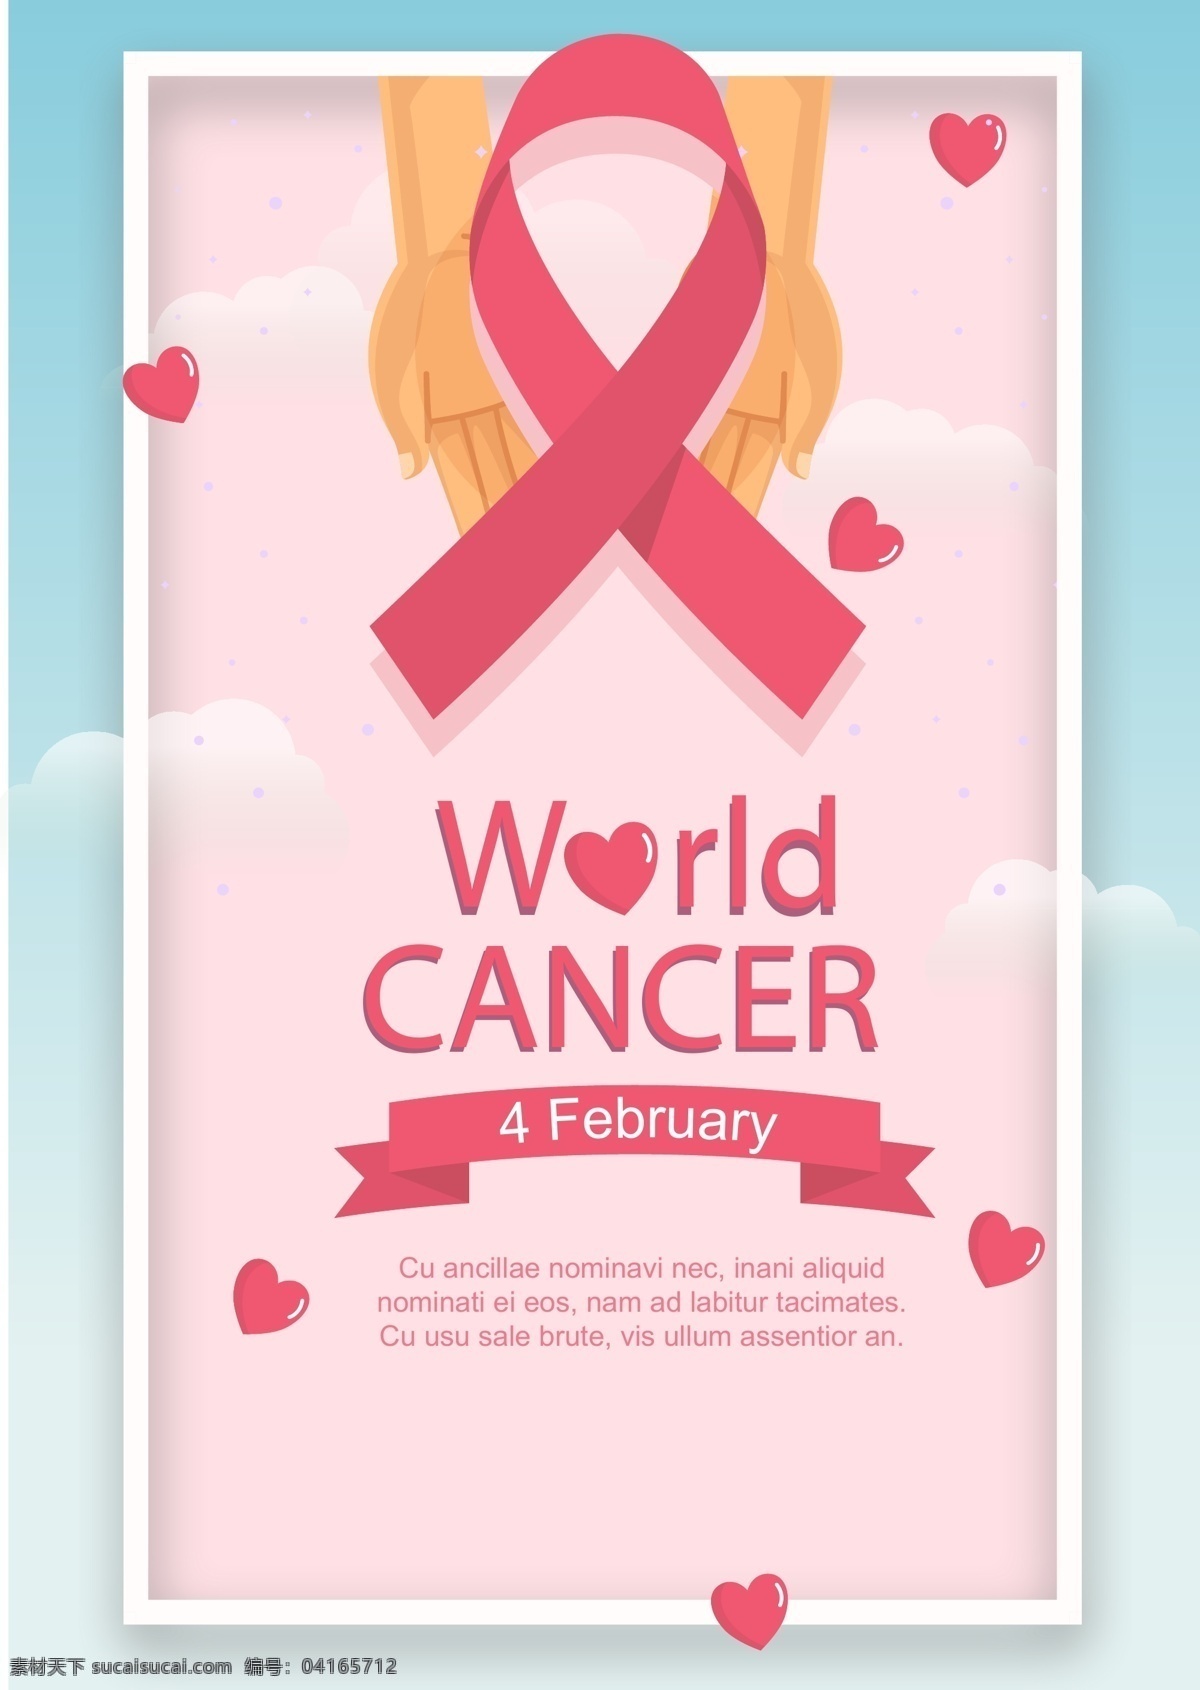 世界 癌症 日 宣传海报 粉红 丝带 蓝天 边界 世界癌症日 天空 心脏形 手 白云 粉红丝带 粉 帧 癌症日促销